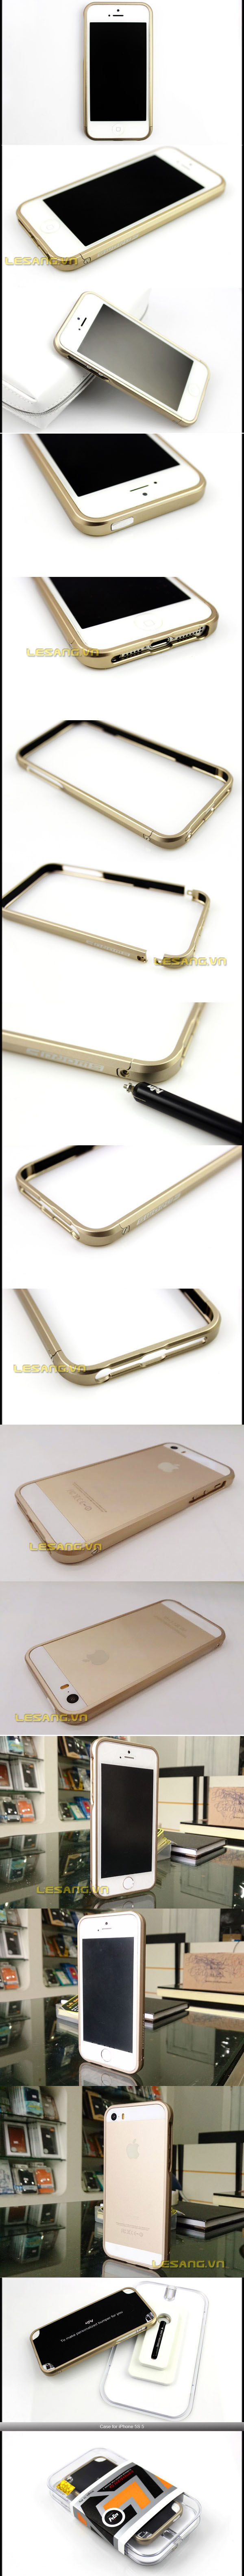 Ốp viền Iphone 5/5s Sword Metal Gold 32